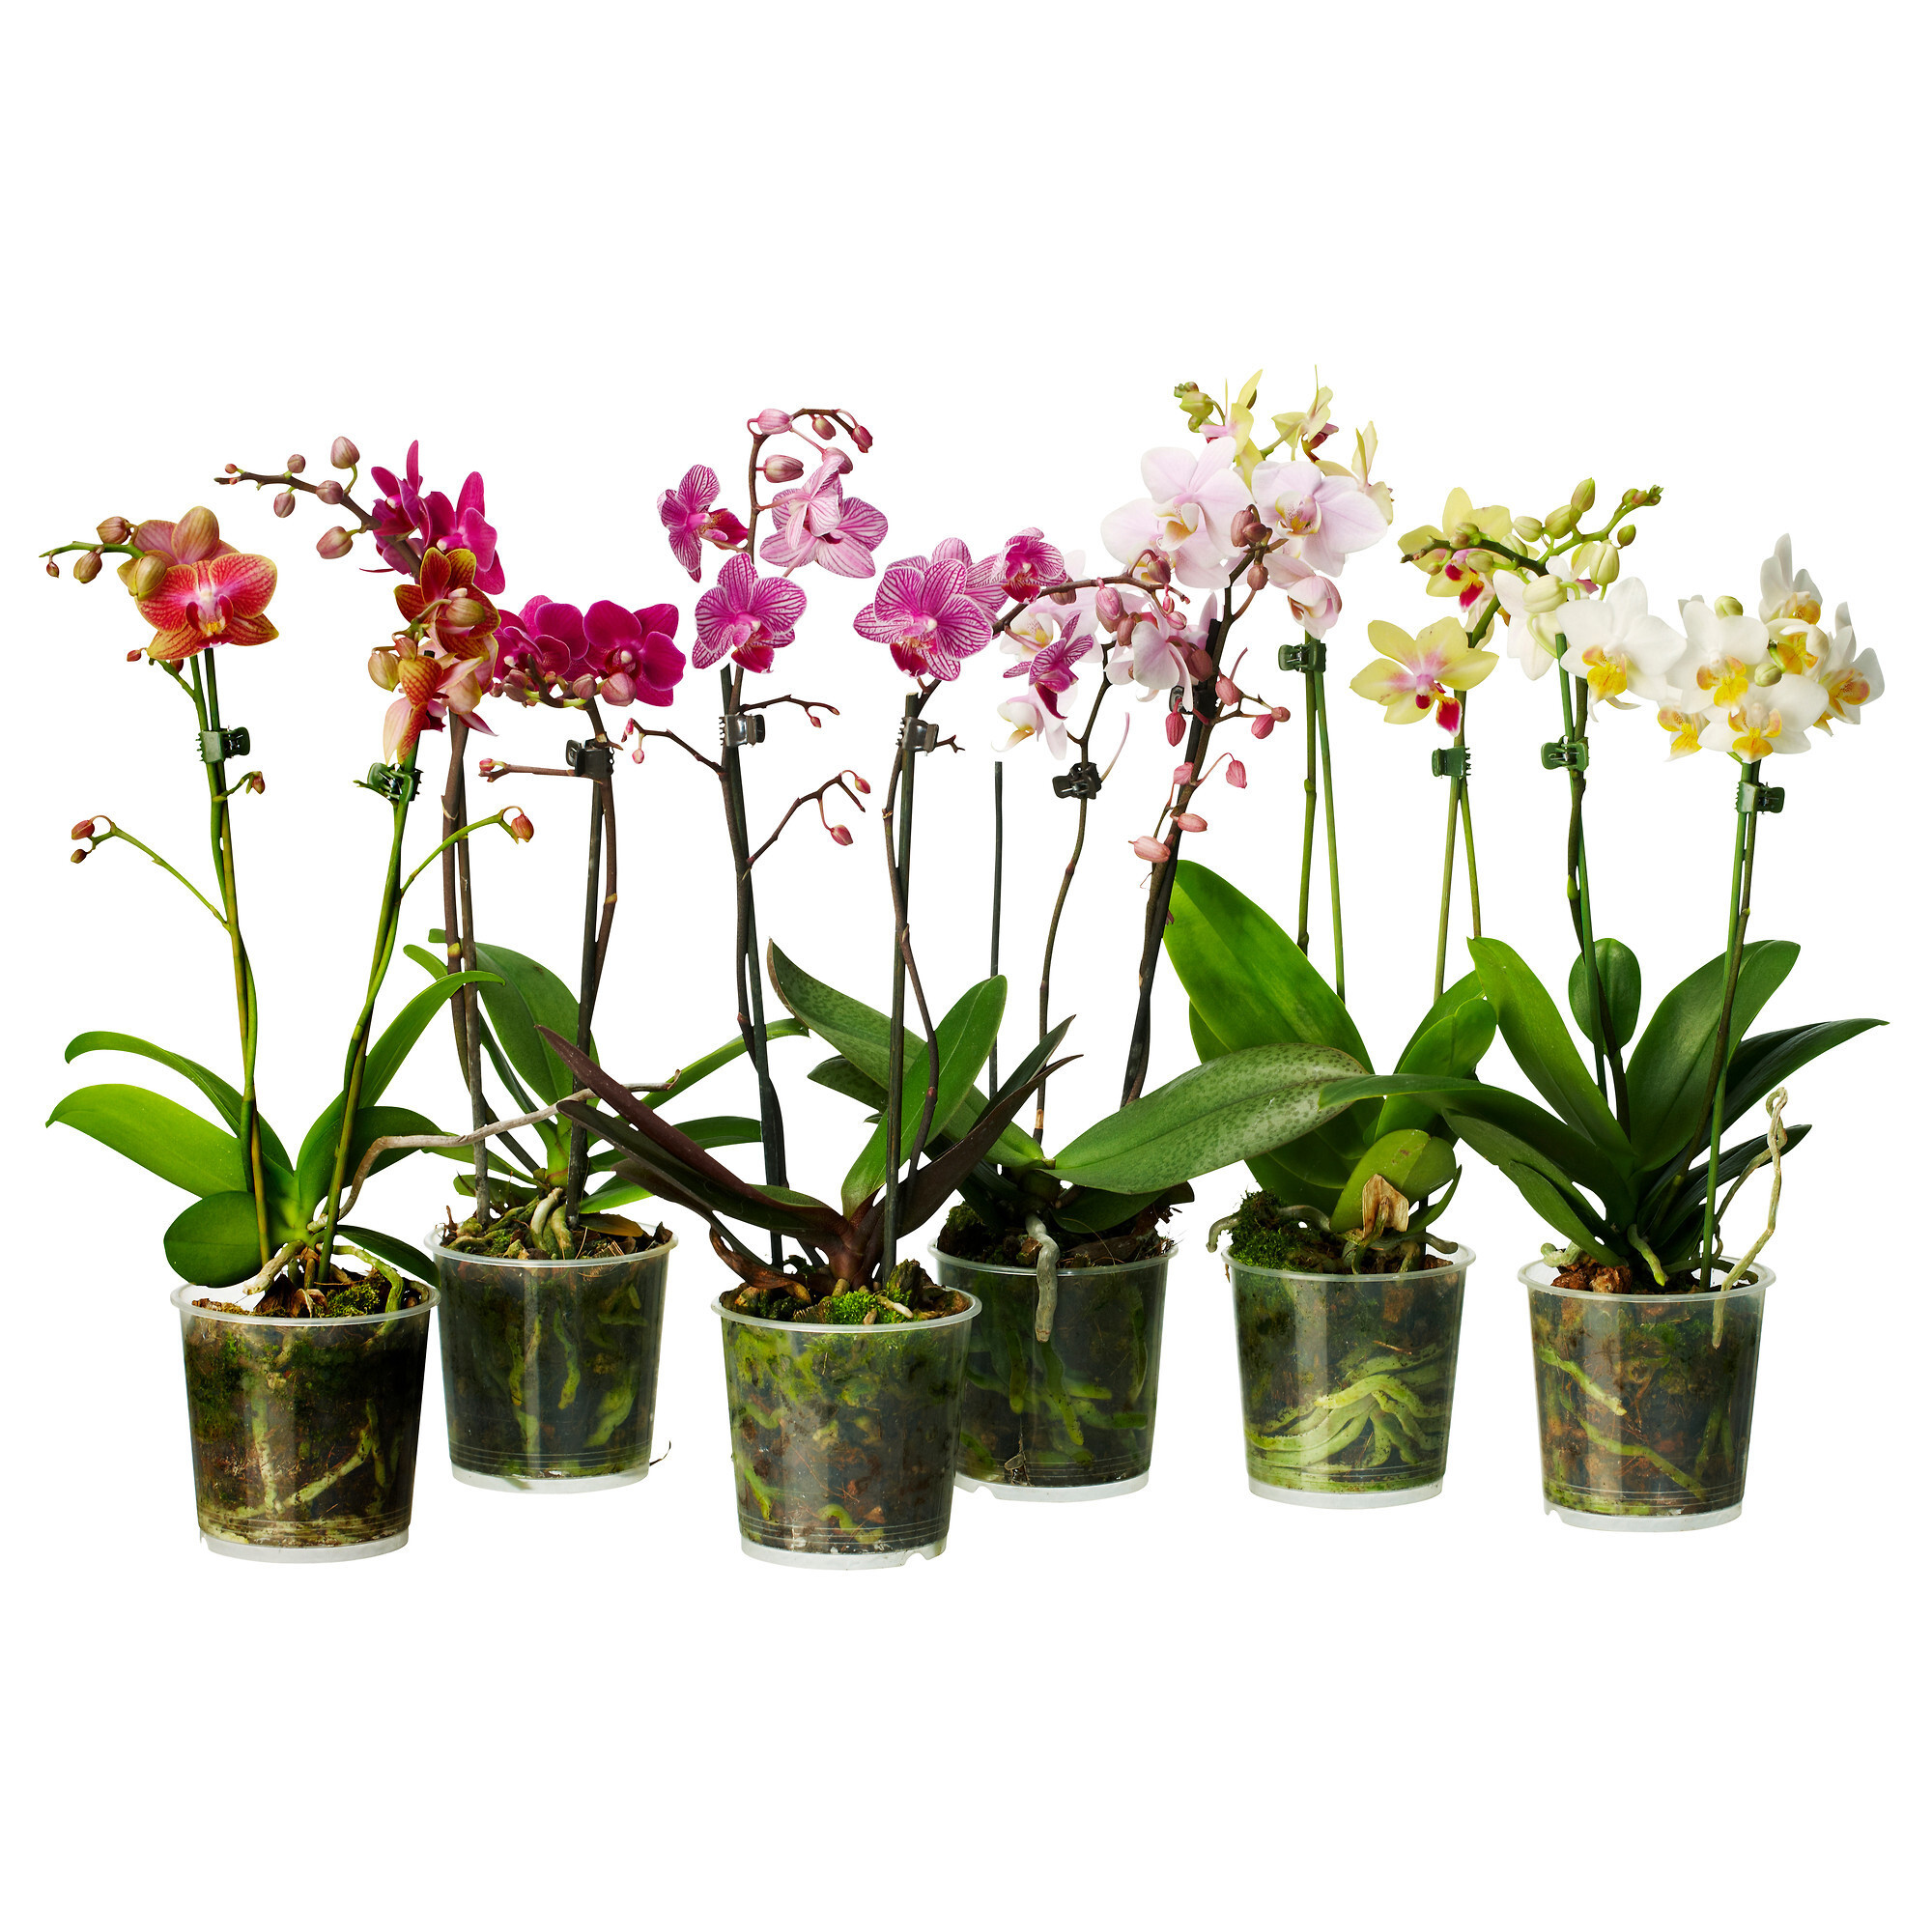 Купить цветы орхидеи в горшке. Орхидея микс d12 h60. Орхидея фаленопсис микс. Фаленопсис микс d12 h40. Цветы фаленопсис микс.